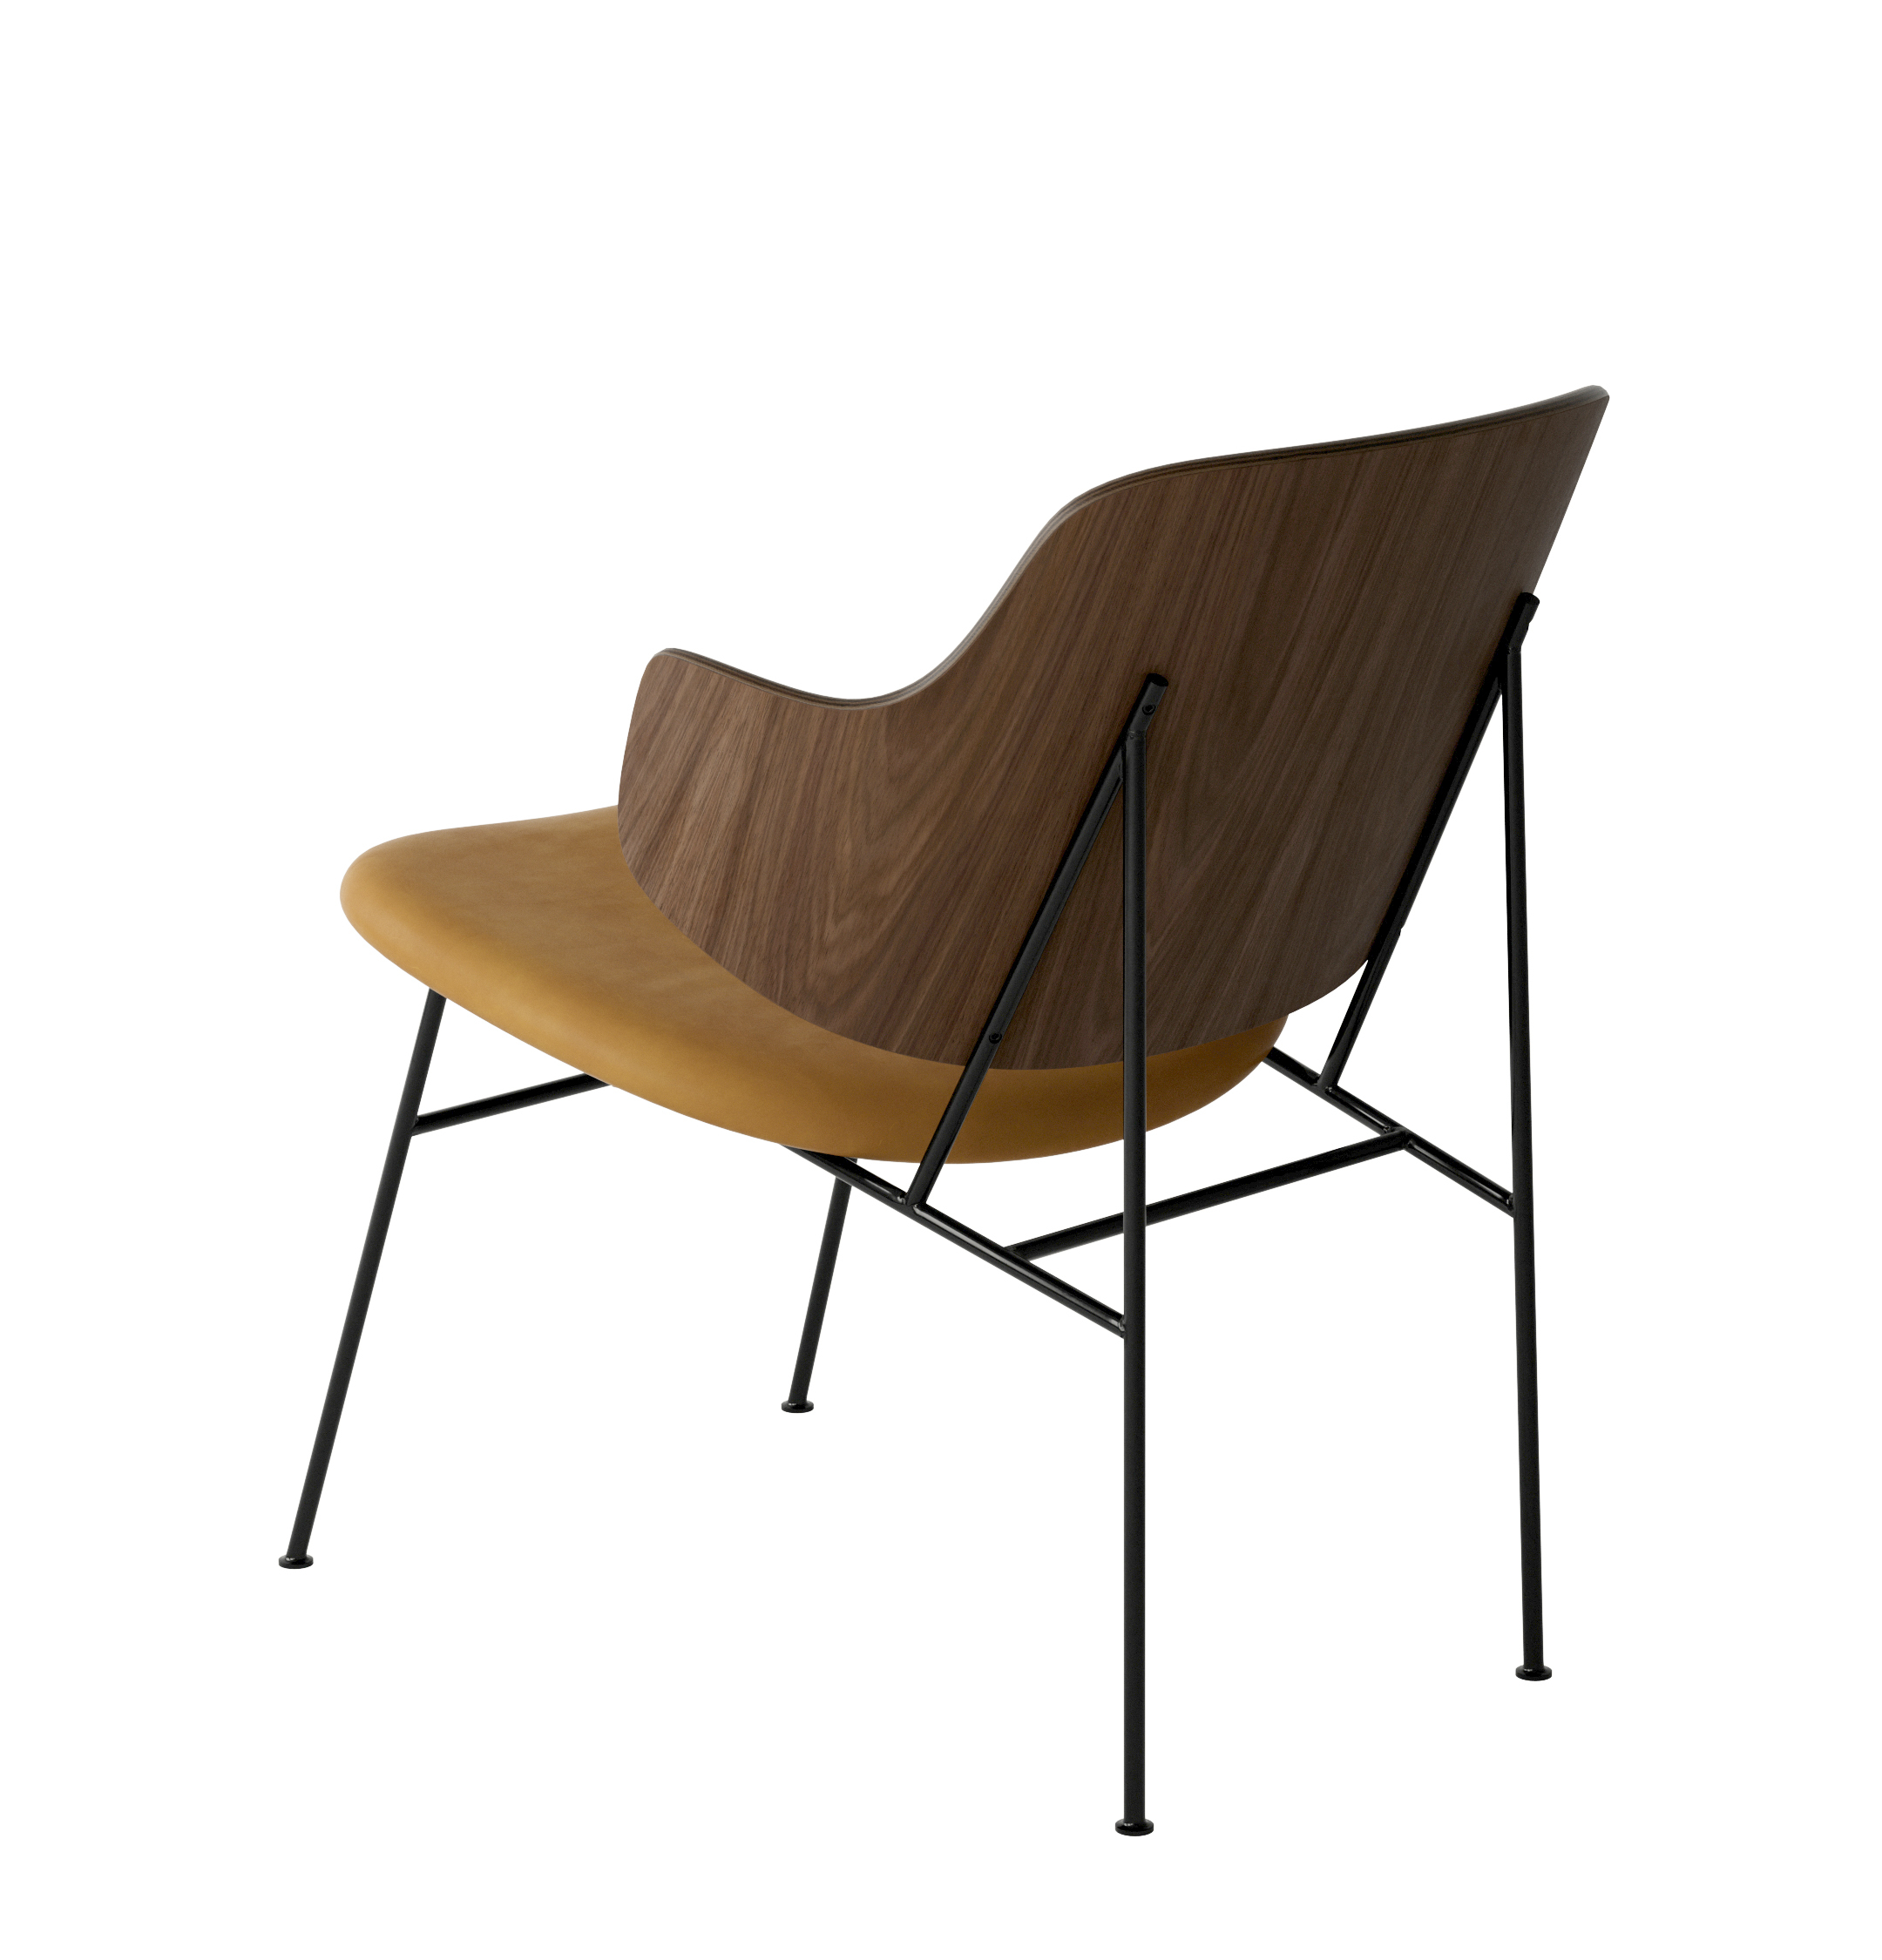 Menu - The Penguin fauteuil, zwart stalen frame, walnoten rugleuning, 0250 (Cognac)